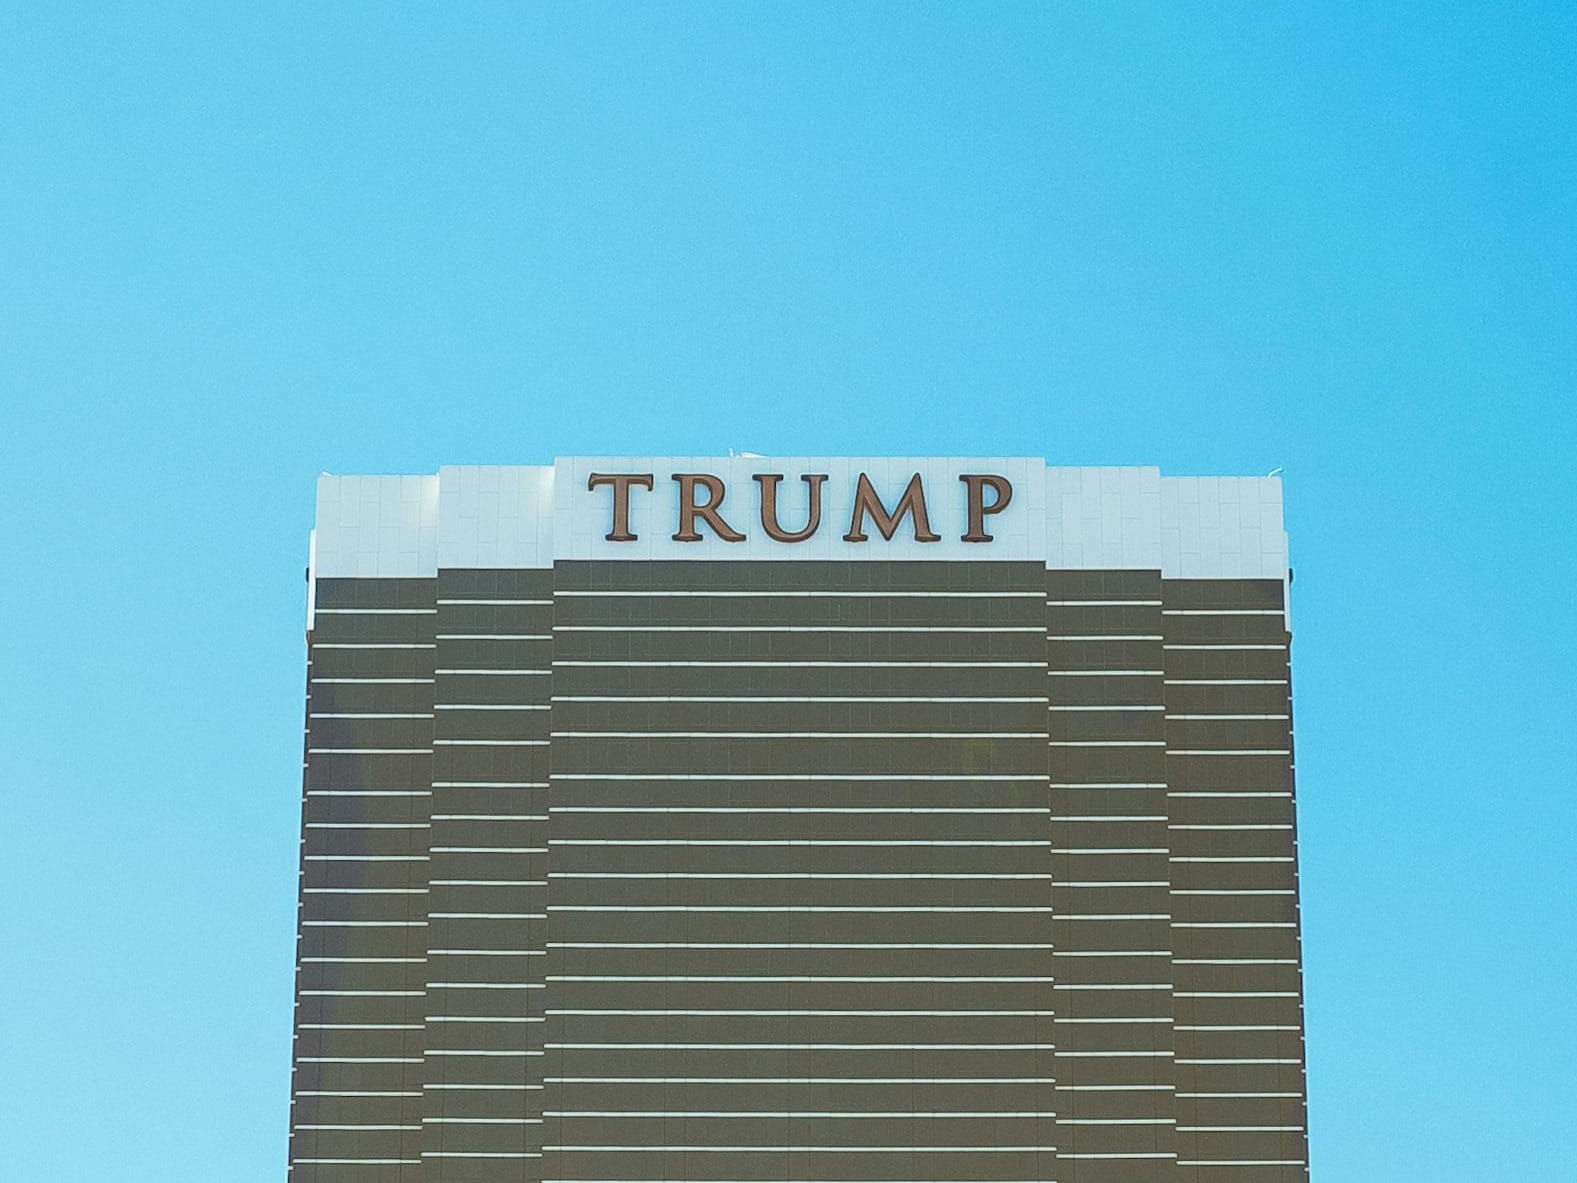 Trump building